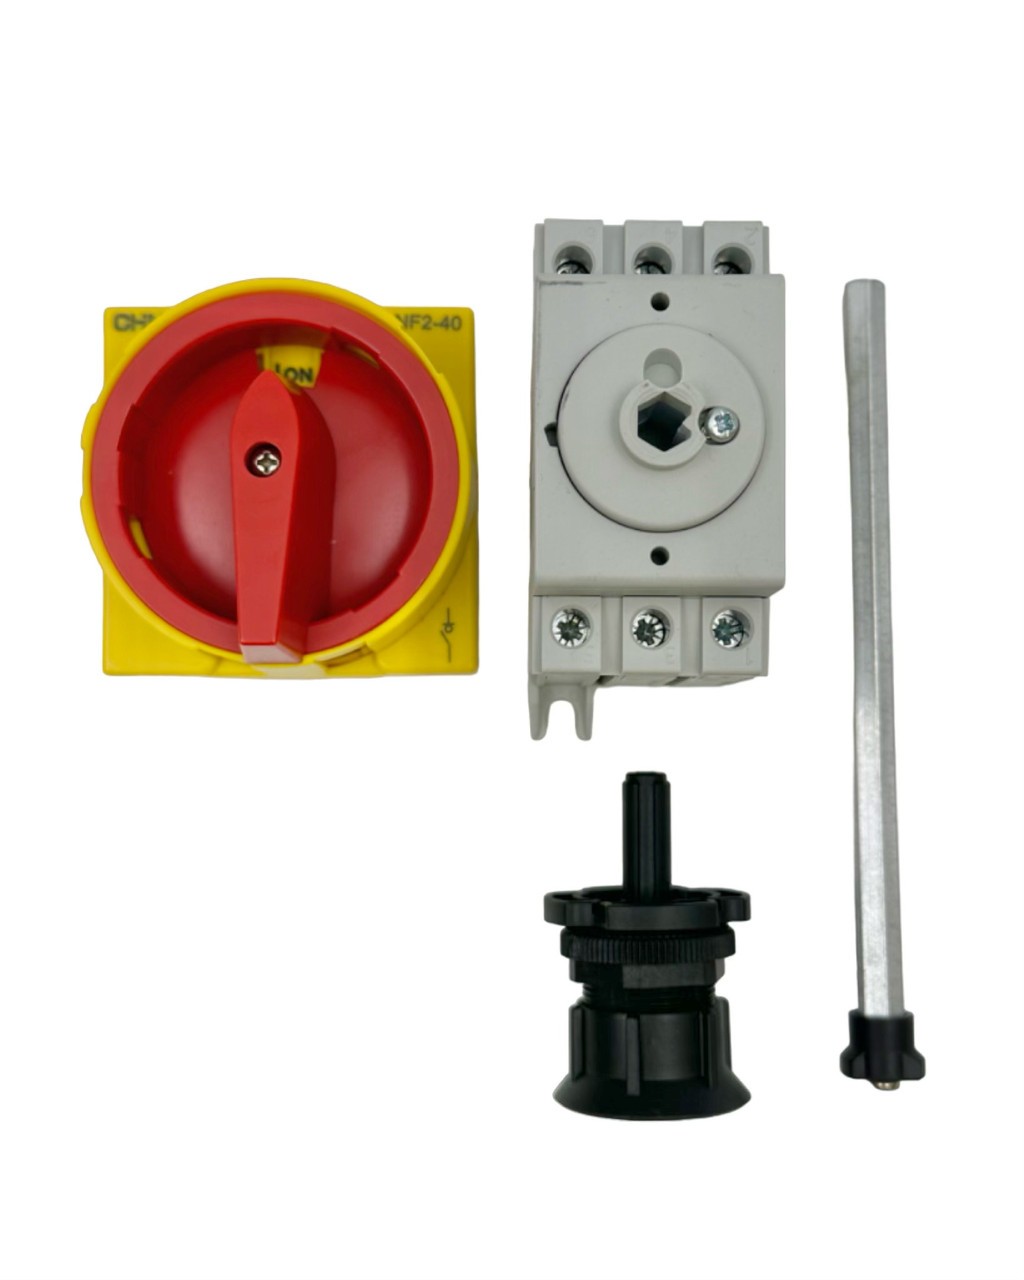 Выключатель-разъединитель NF2-40/3DORY выносная рукоятка управления для установки на дверь (R) (CHINT) 324125